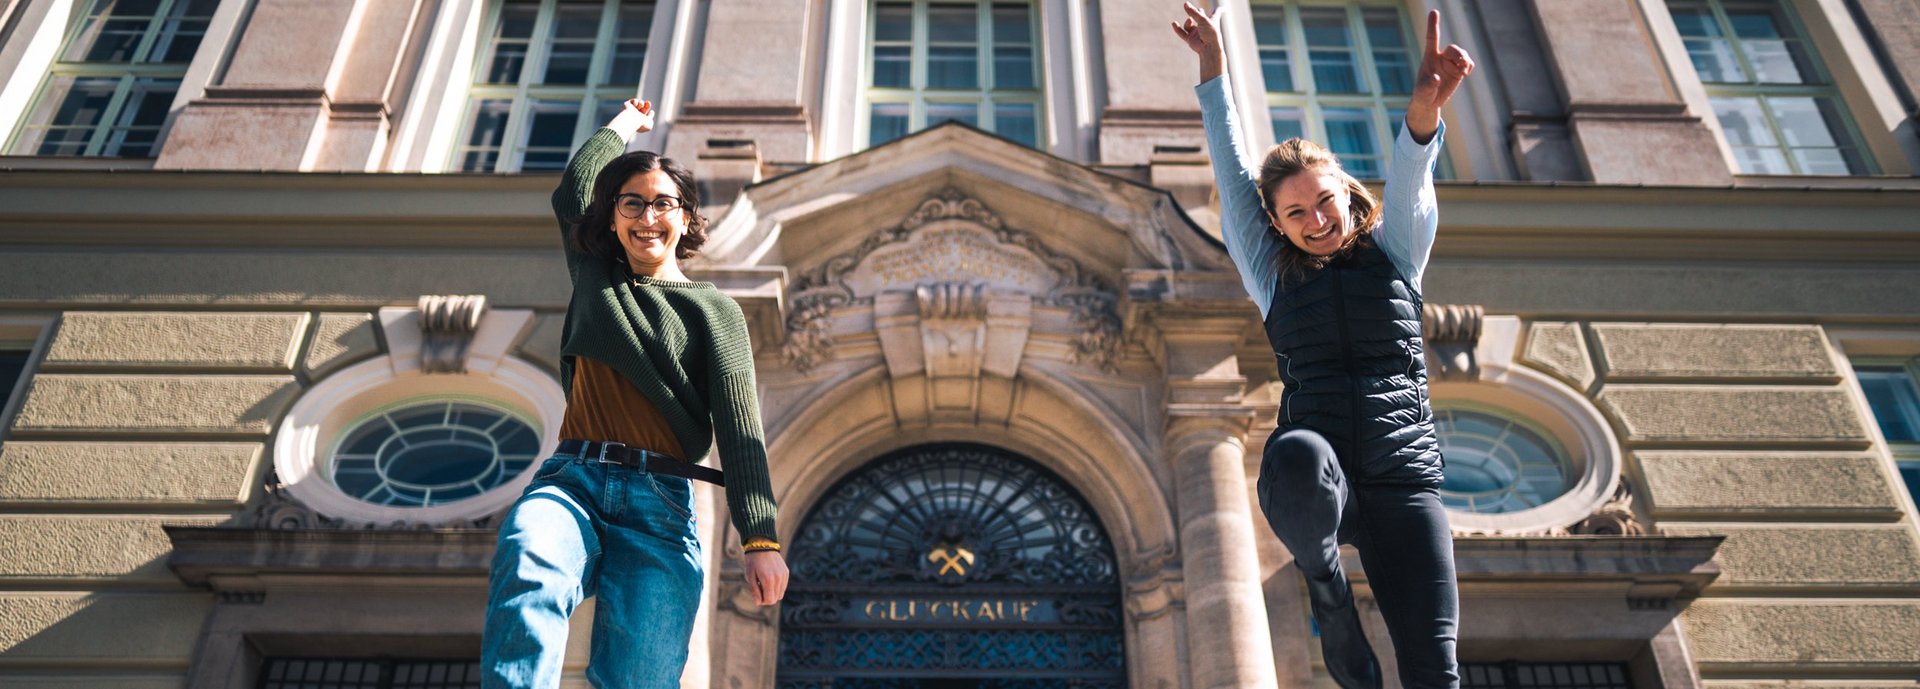 Zwei angehende Studentinnen freuen sich auf ihr Studium vor dem Hauptgebäude der Montanuniversität.